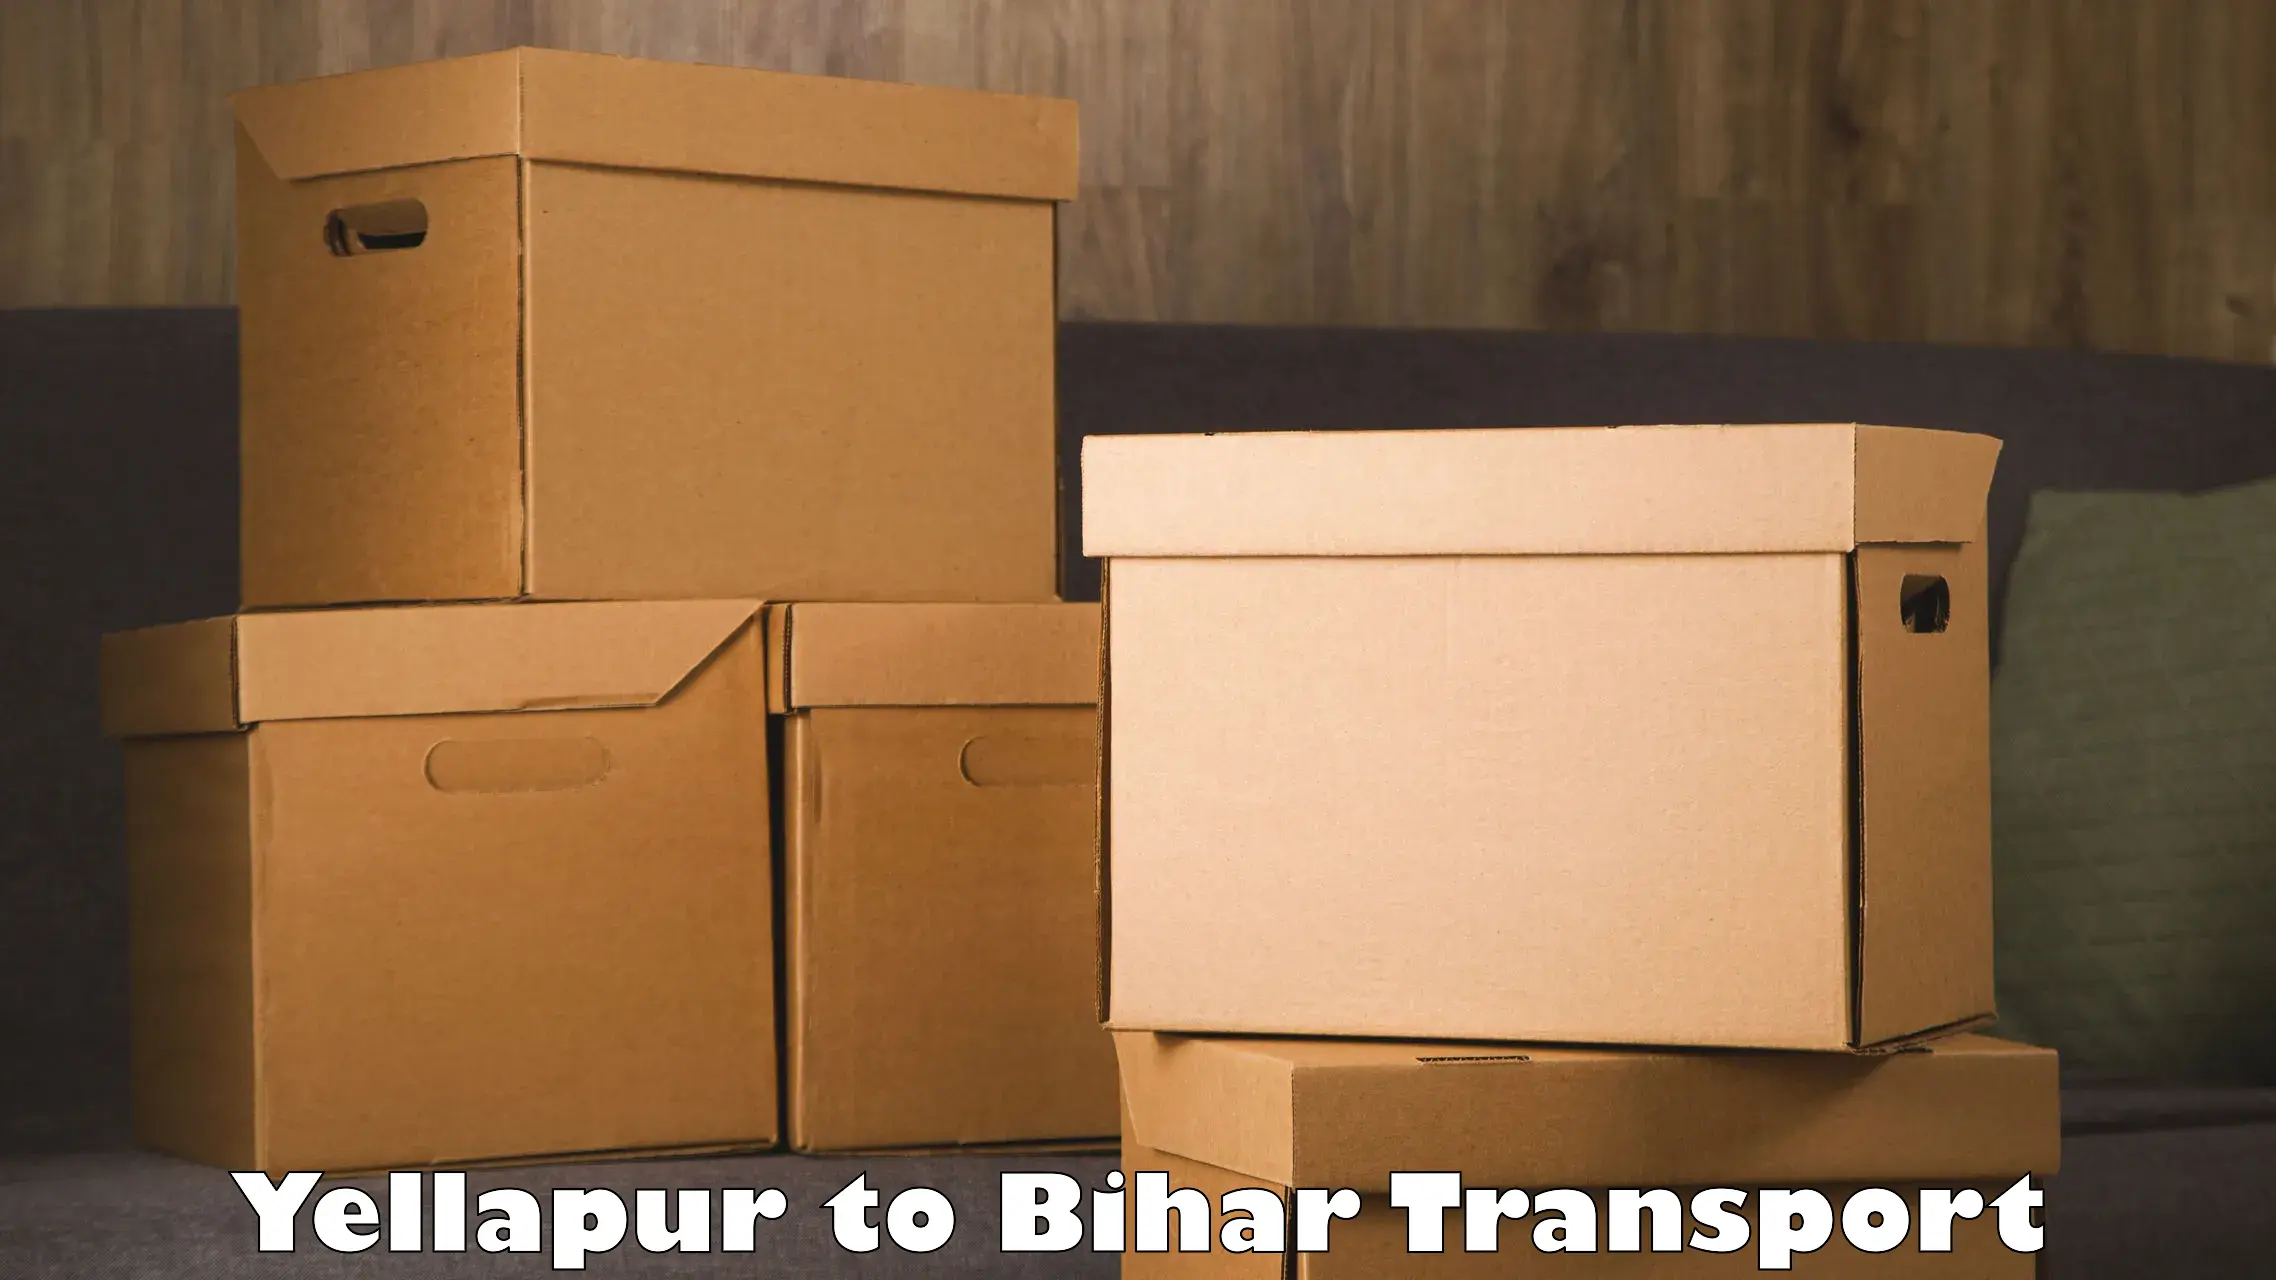 Transport in sharing Yellapur to Jiwdhara